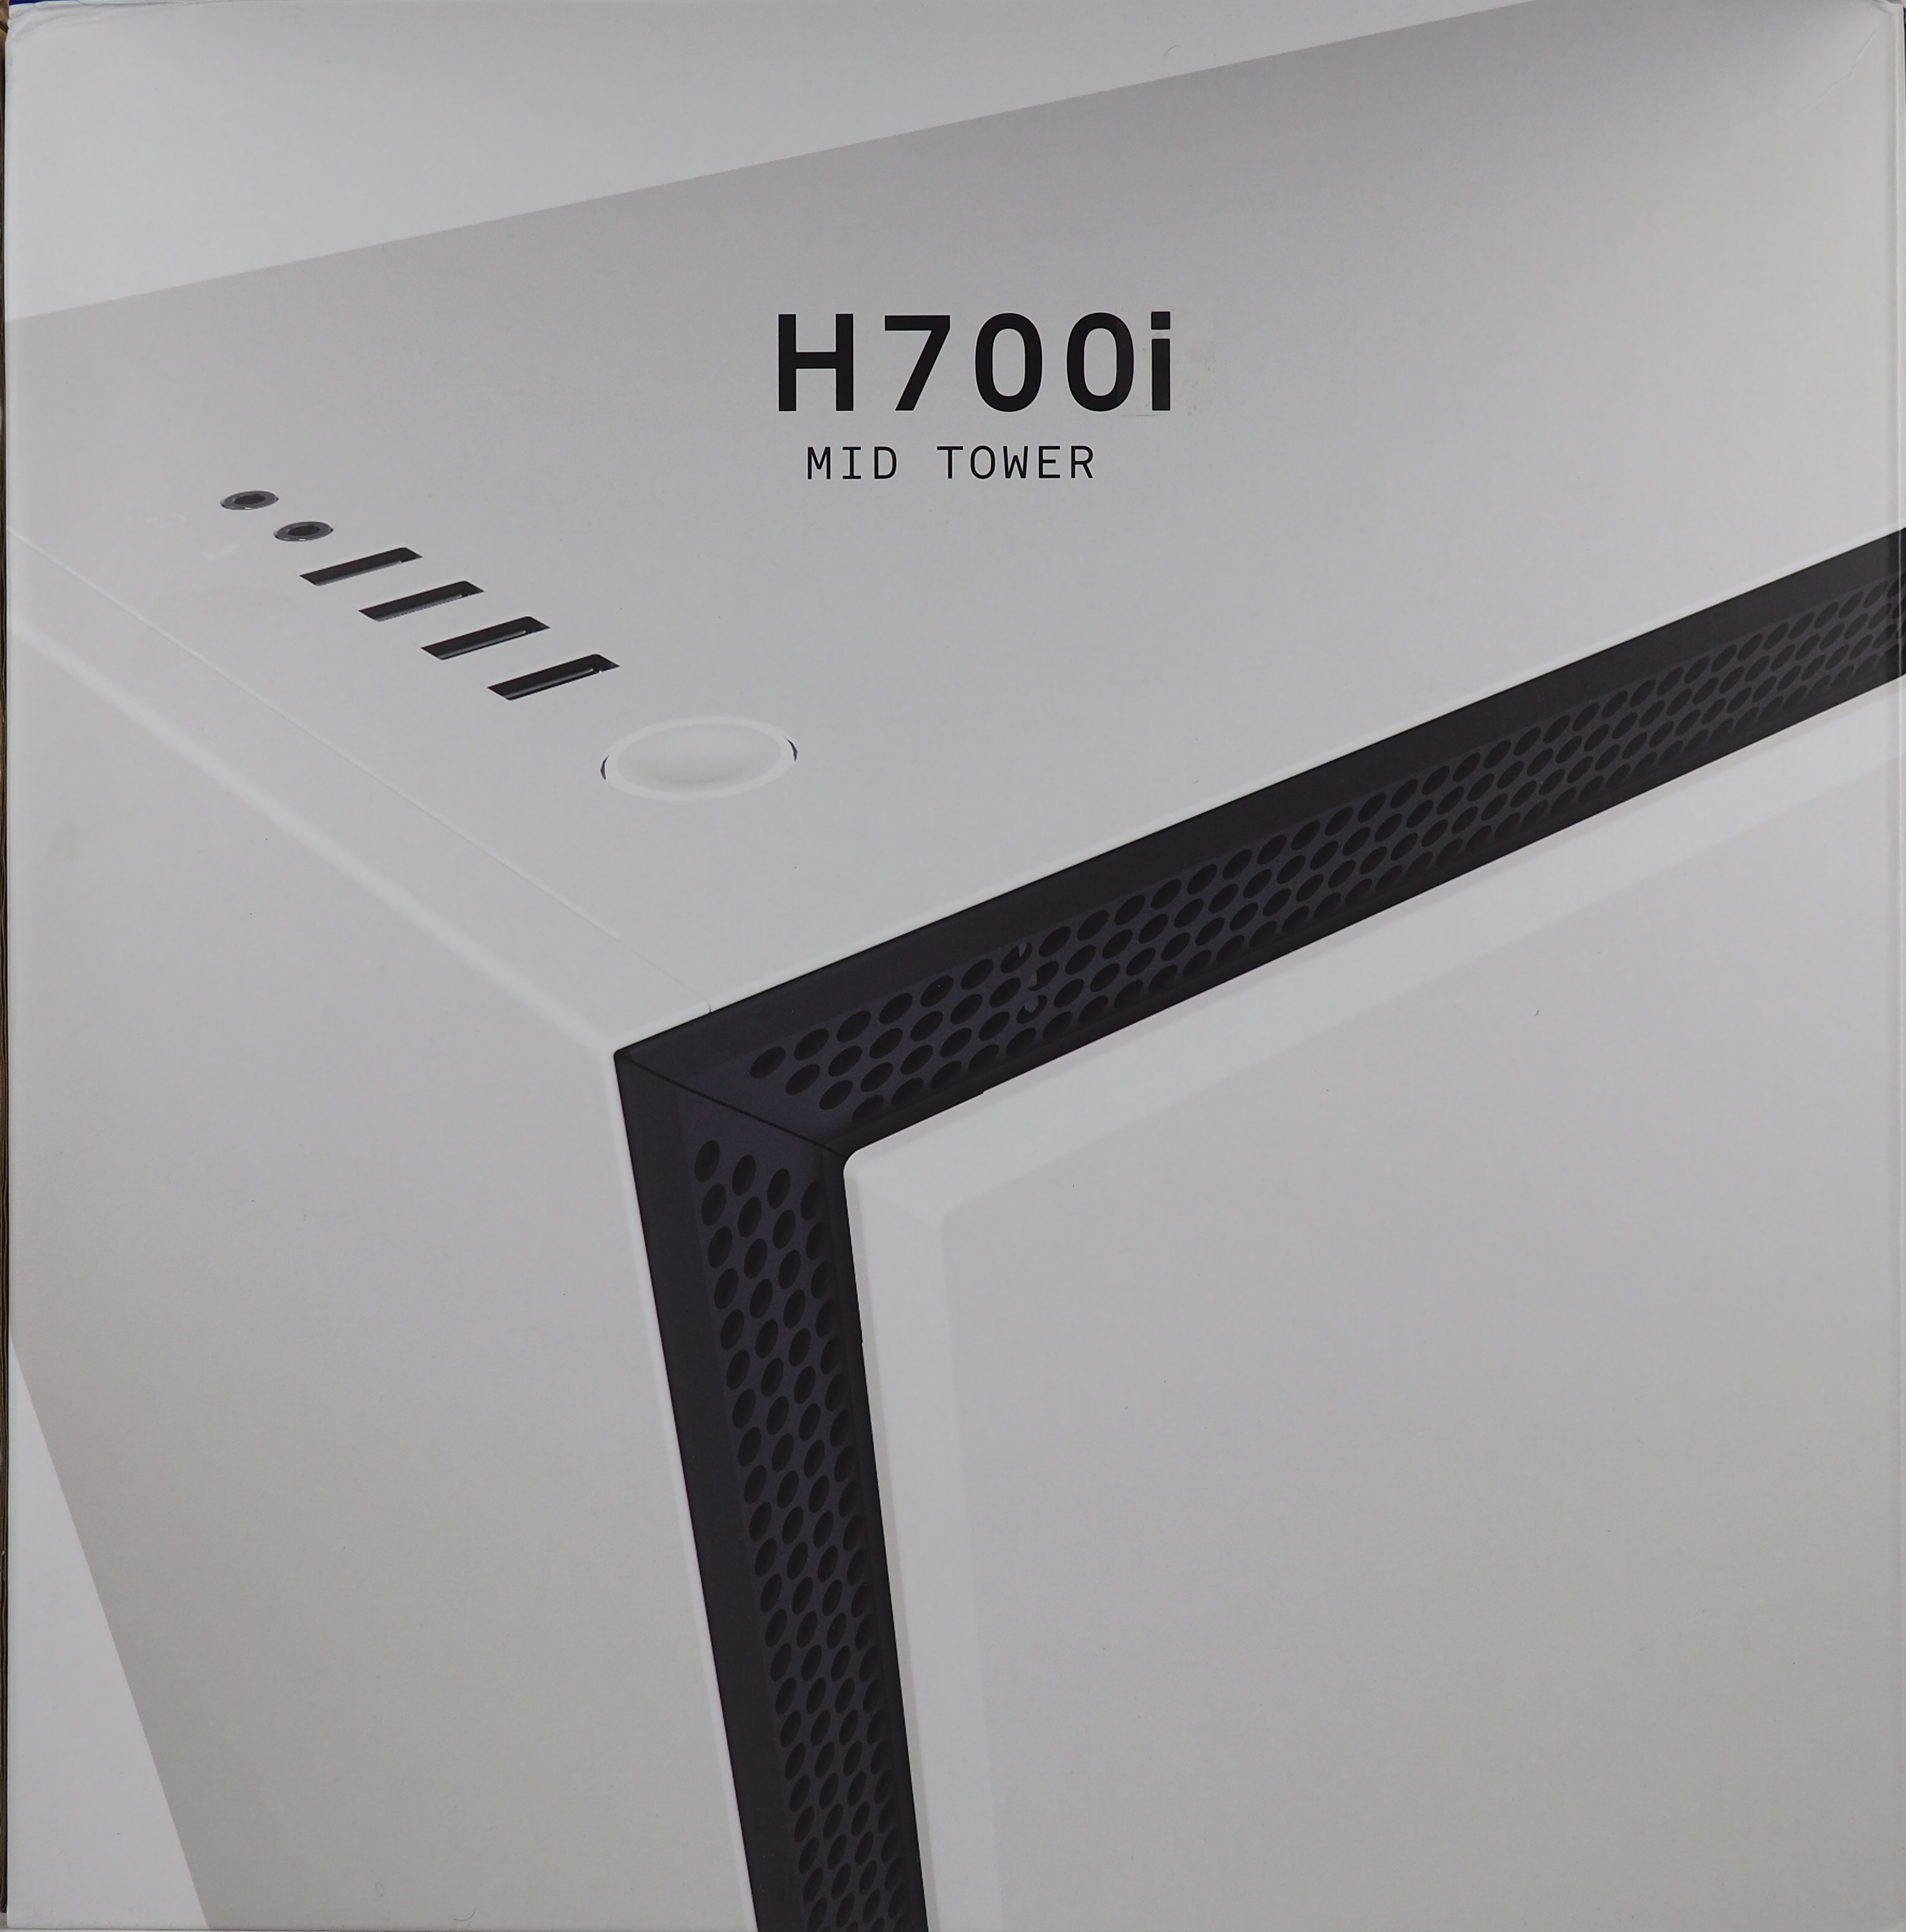 NZXT H700 (noir/bleu) - Boîtier PC - Garantie 3 ans LDLC